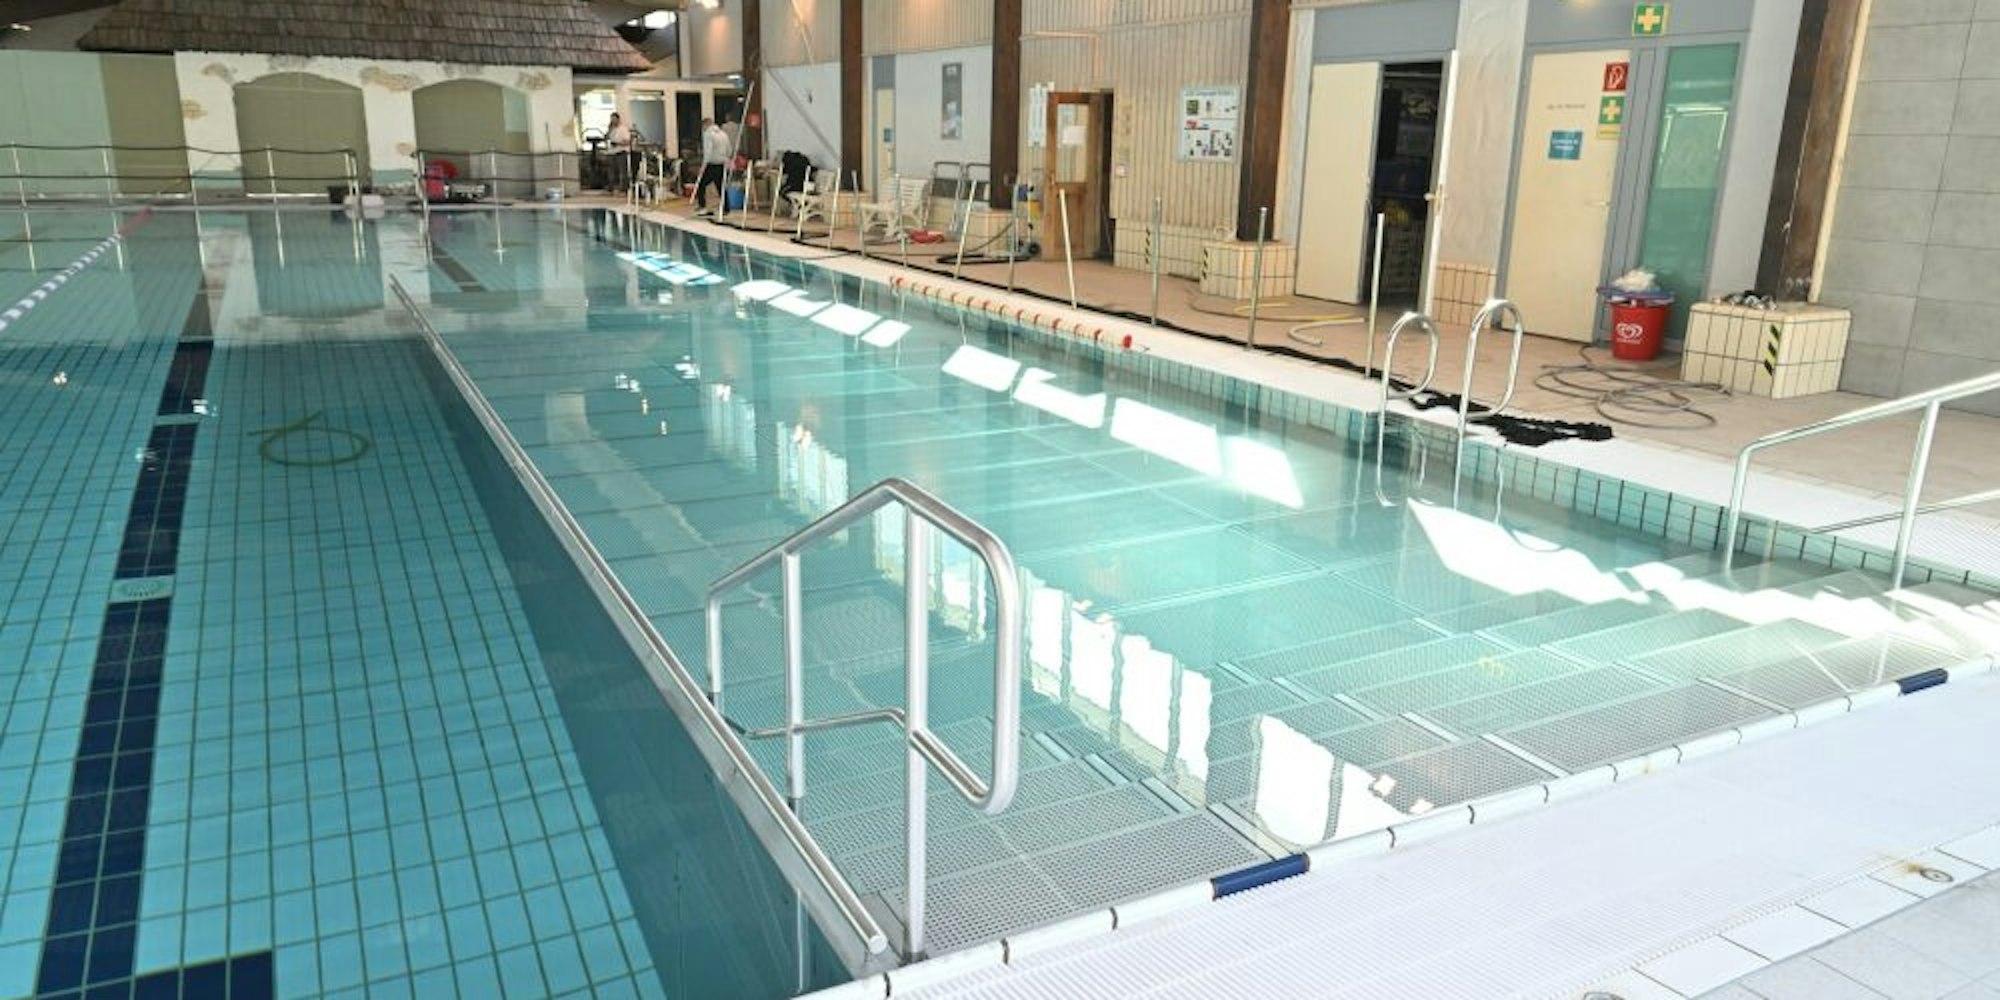 Das Schwimmerbecken mit der eingebauten Edelstahlwanne für die Nichtschwimmer (rechts).